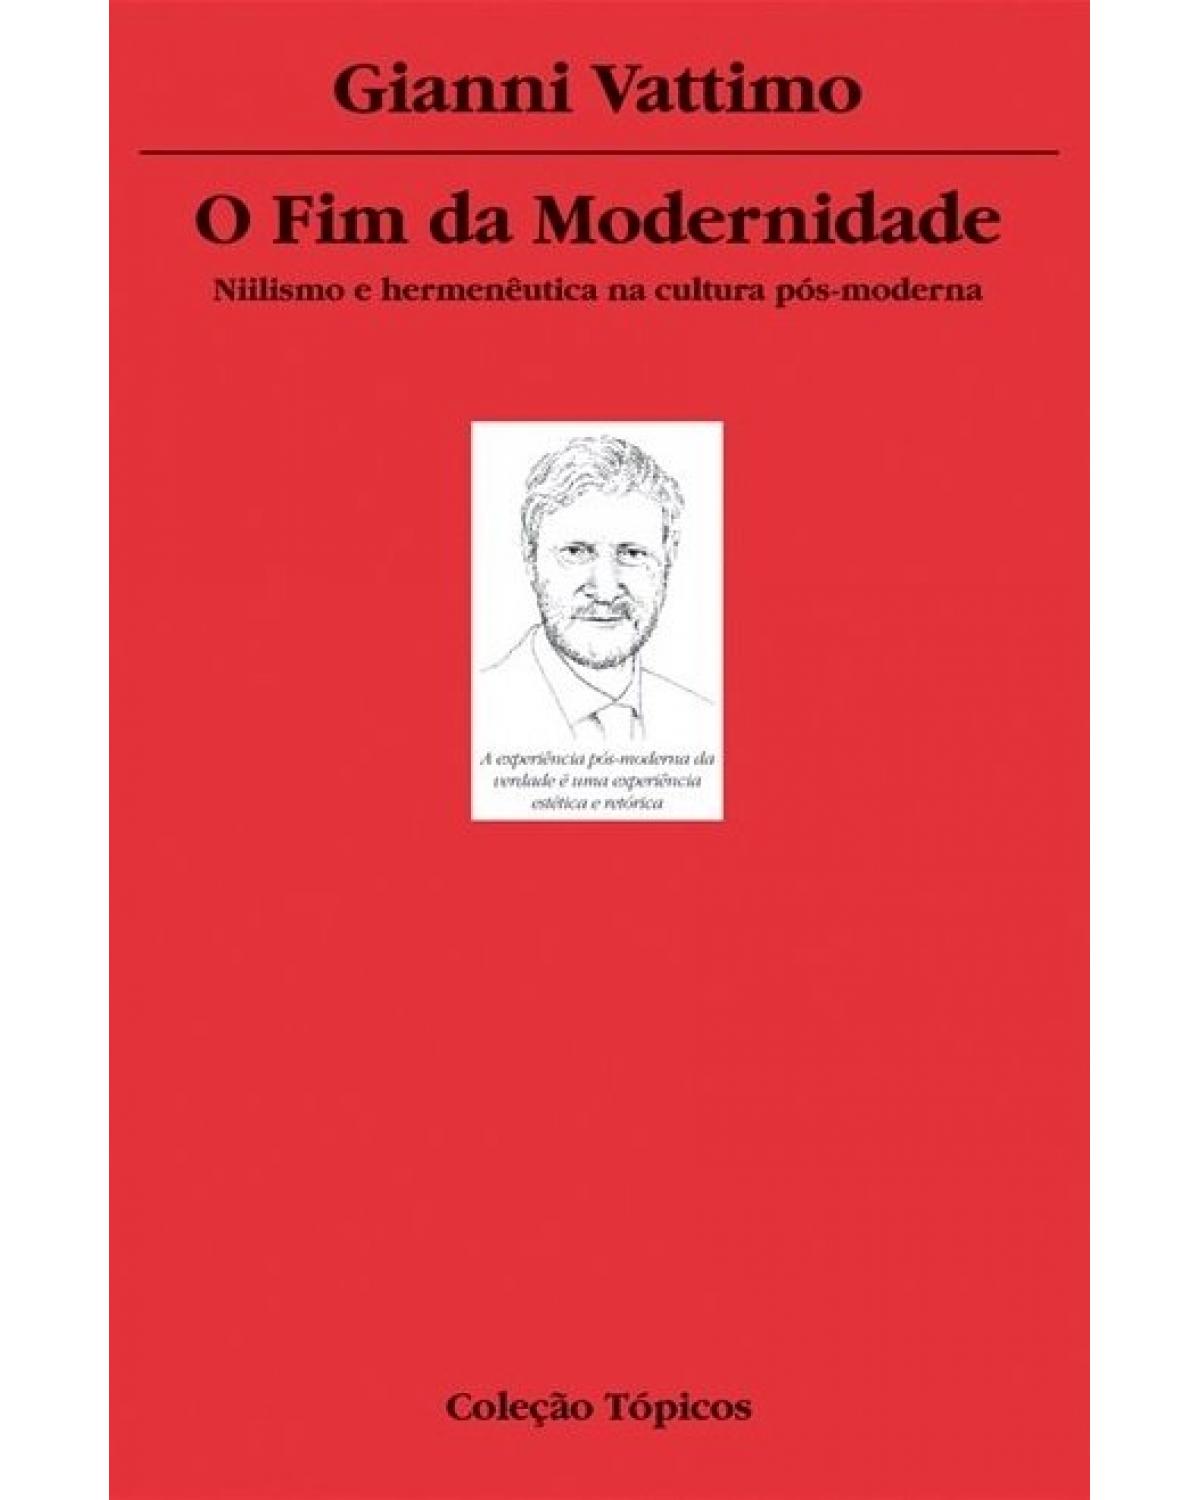 O fim da modernidade - niilismo e hermenêutica na cultura pós-moderna - 2ª Edição | 2007